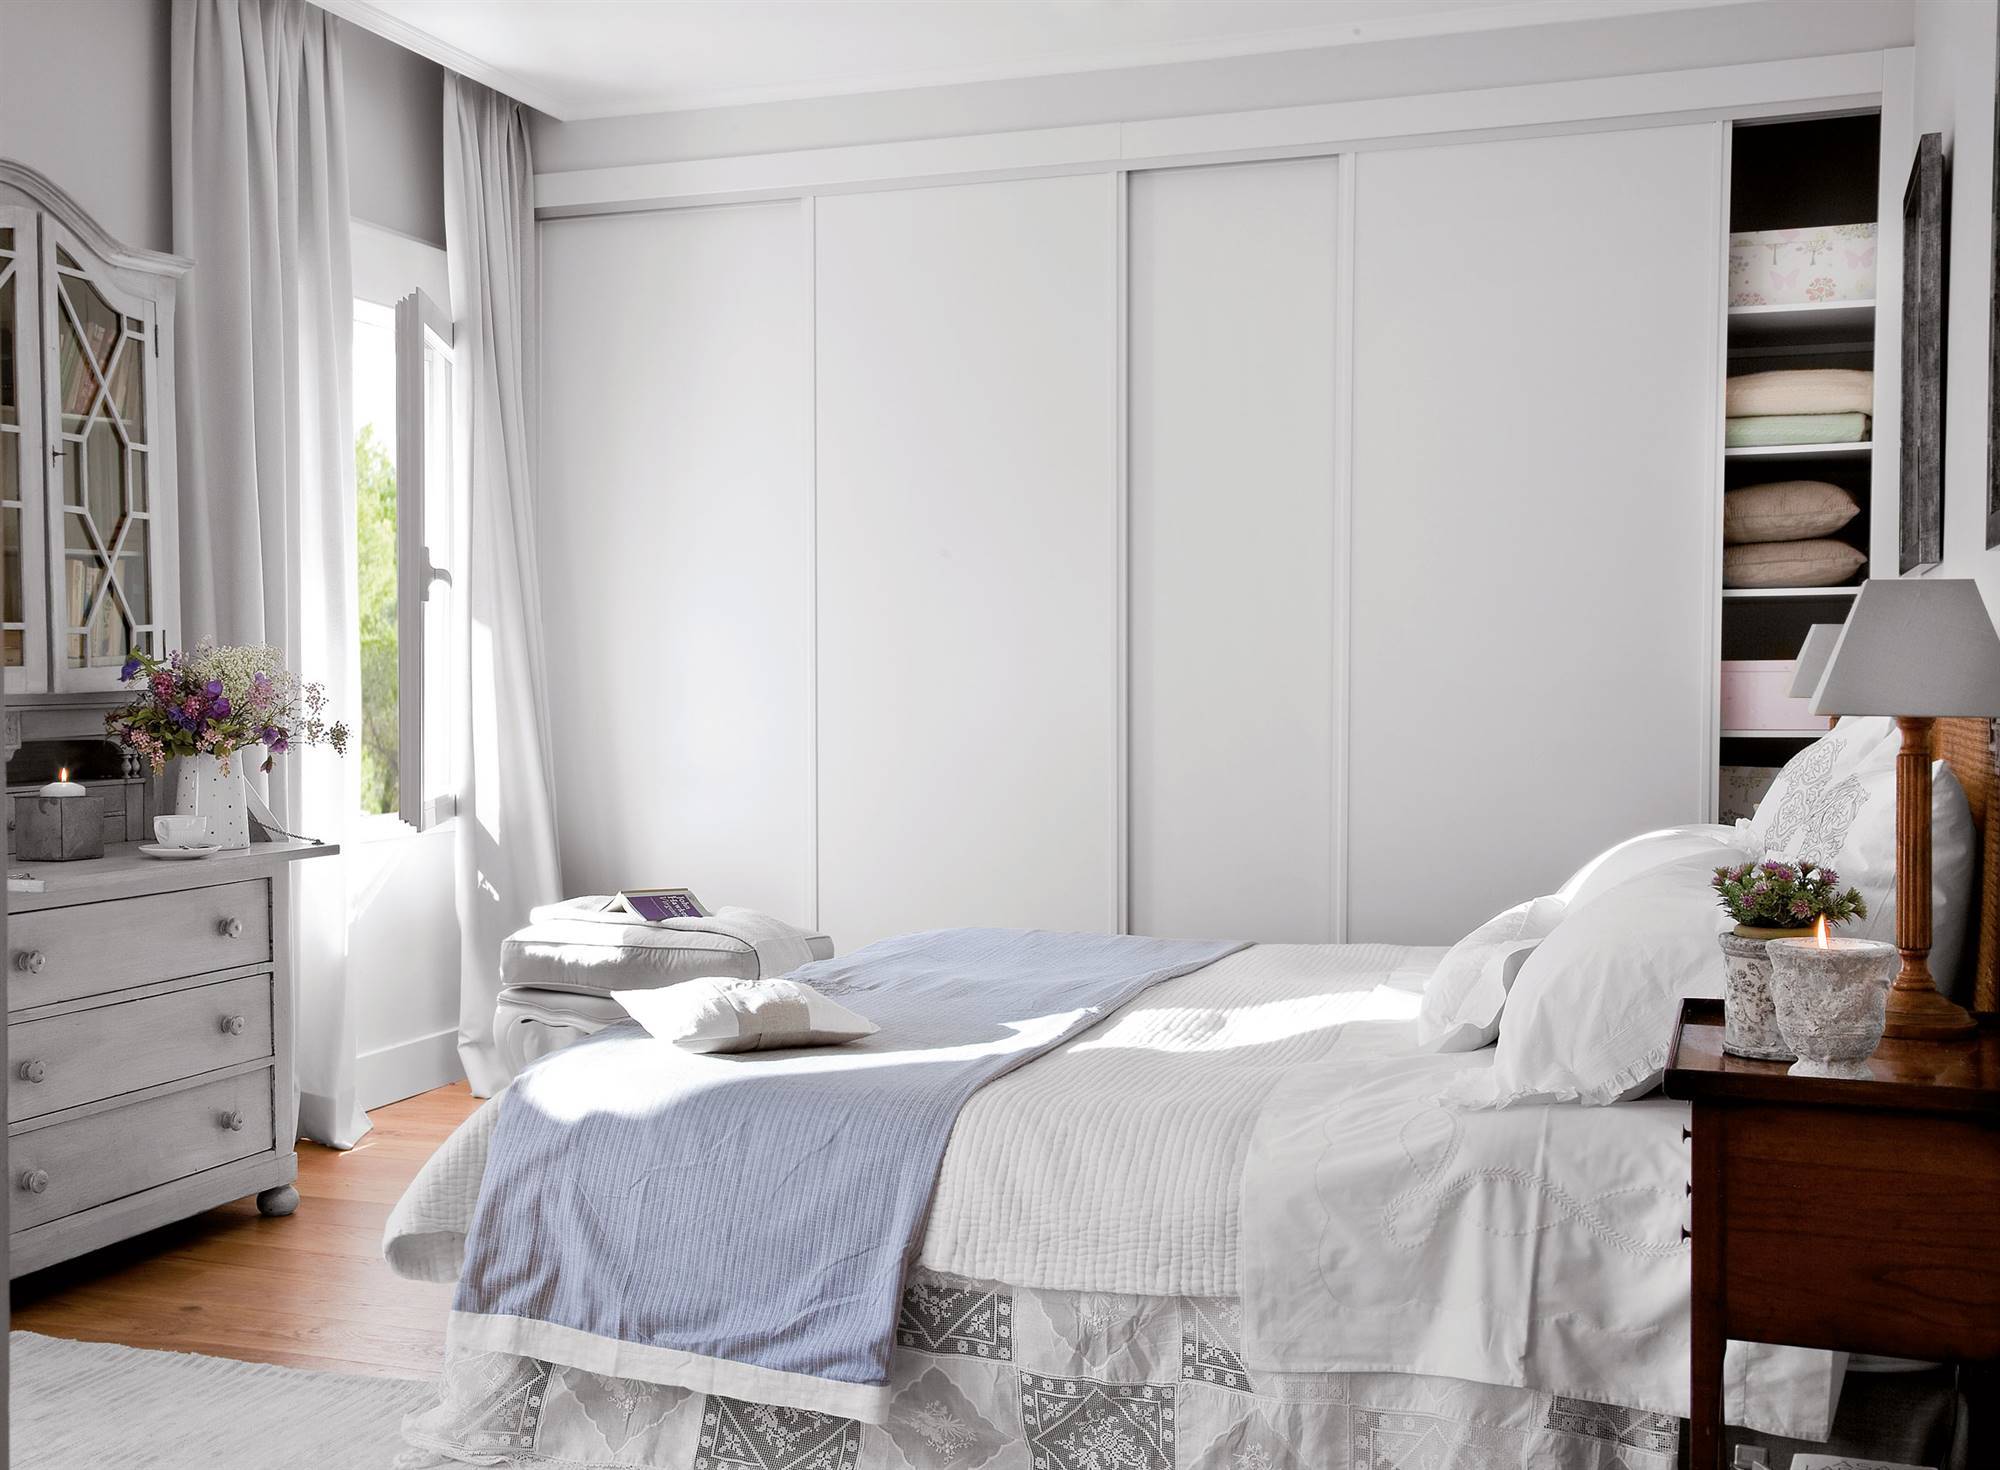 Dormitorios decorados en blanco